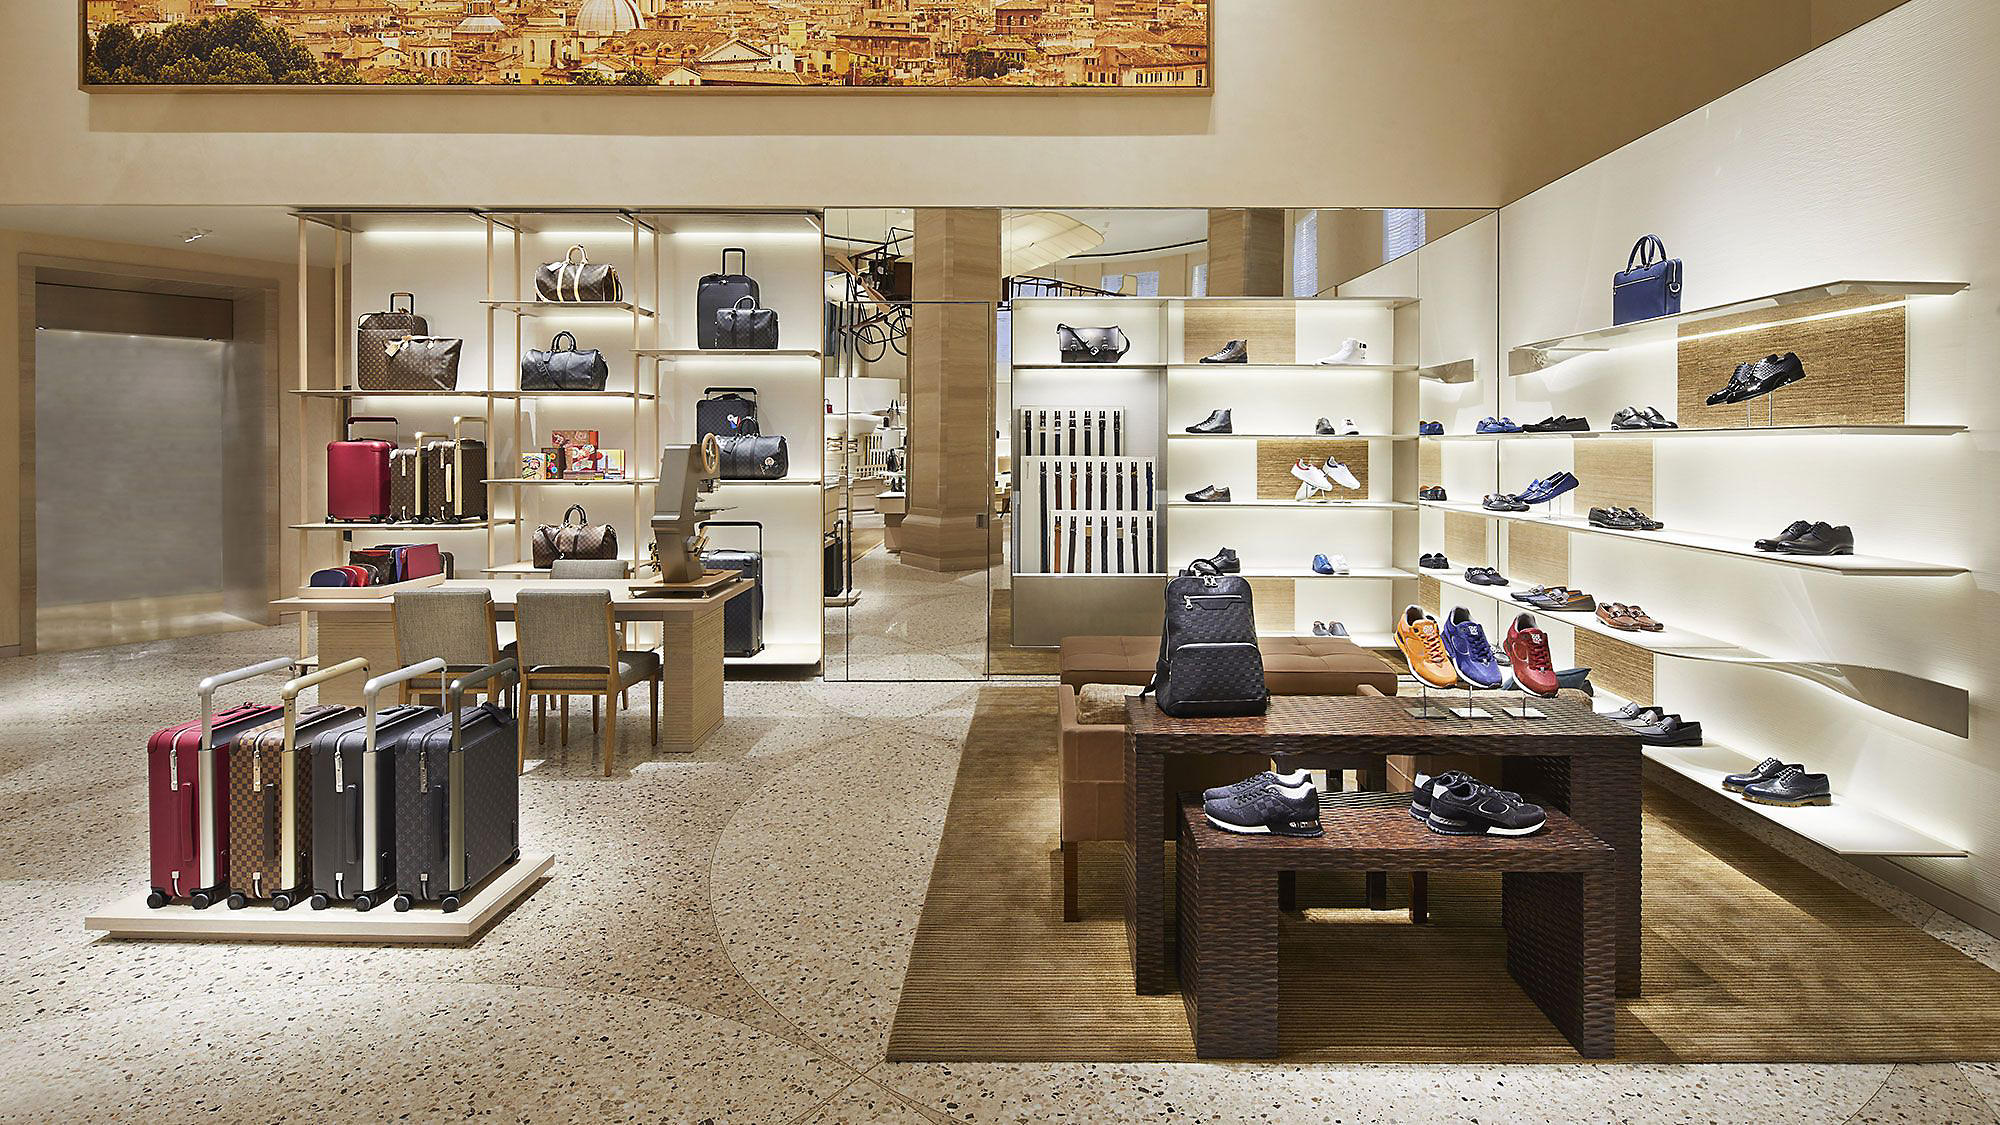 Louis Vuitton scarpe - Abbigliamento e Accessori In vendita a Roma